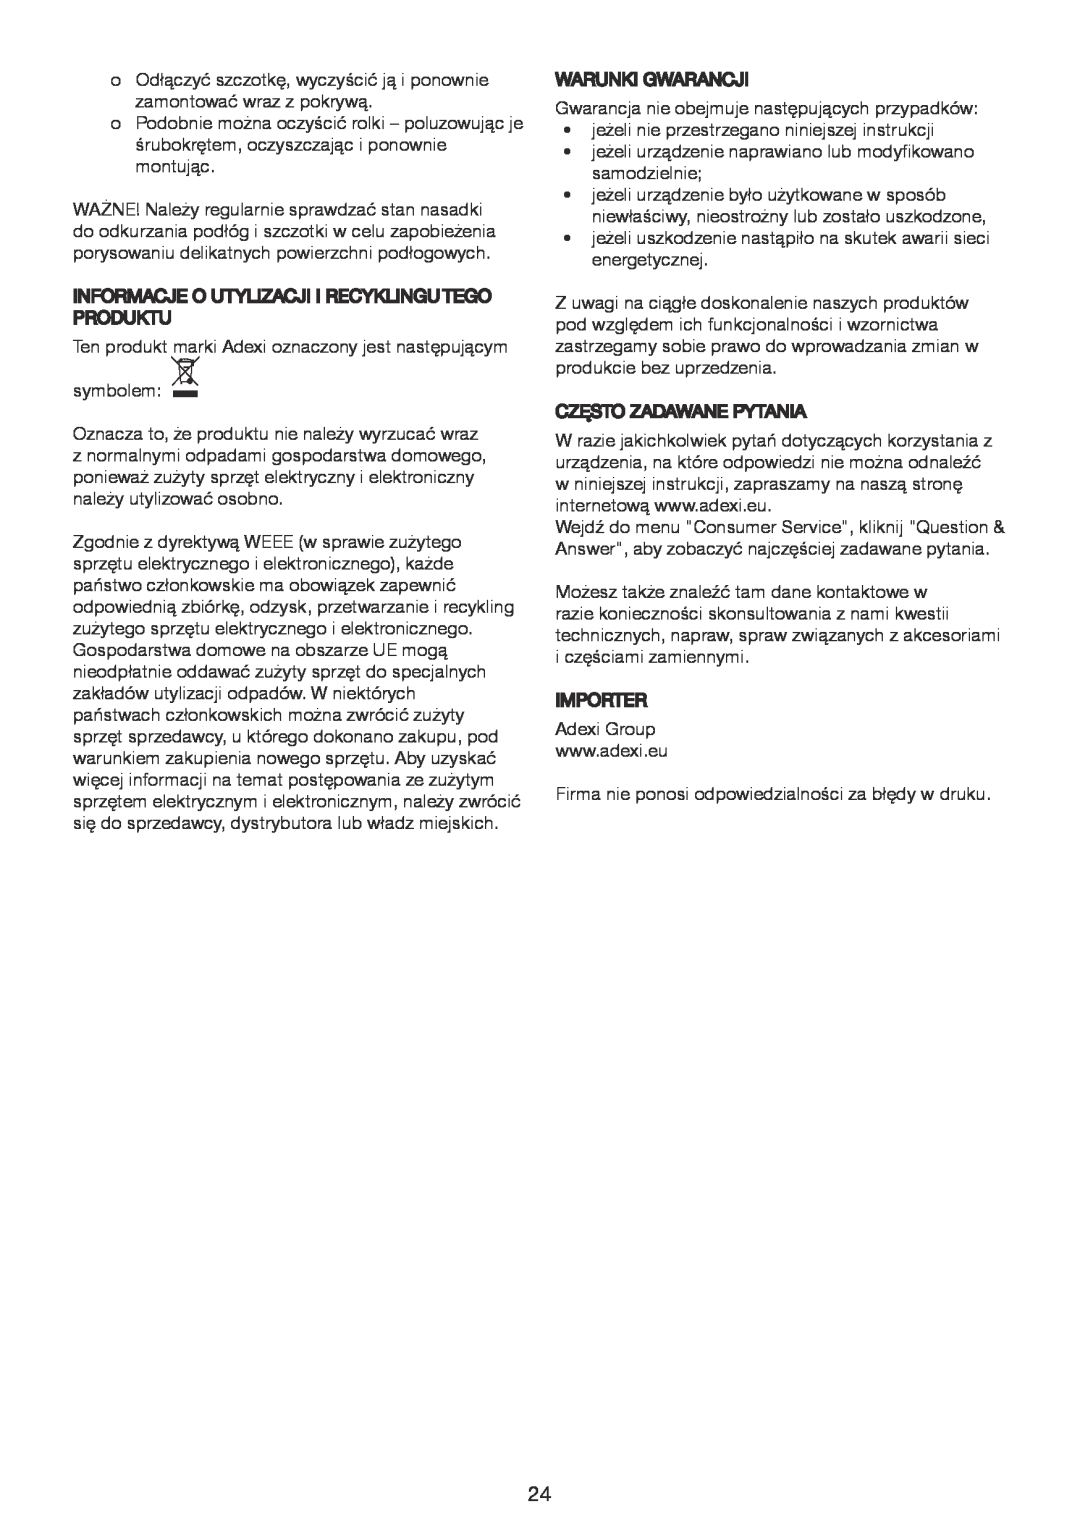 Melissa 640-075 manual Informacjeo Utylizacji Irecyklingu Tego Produktu 